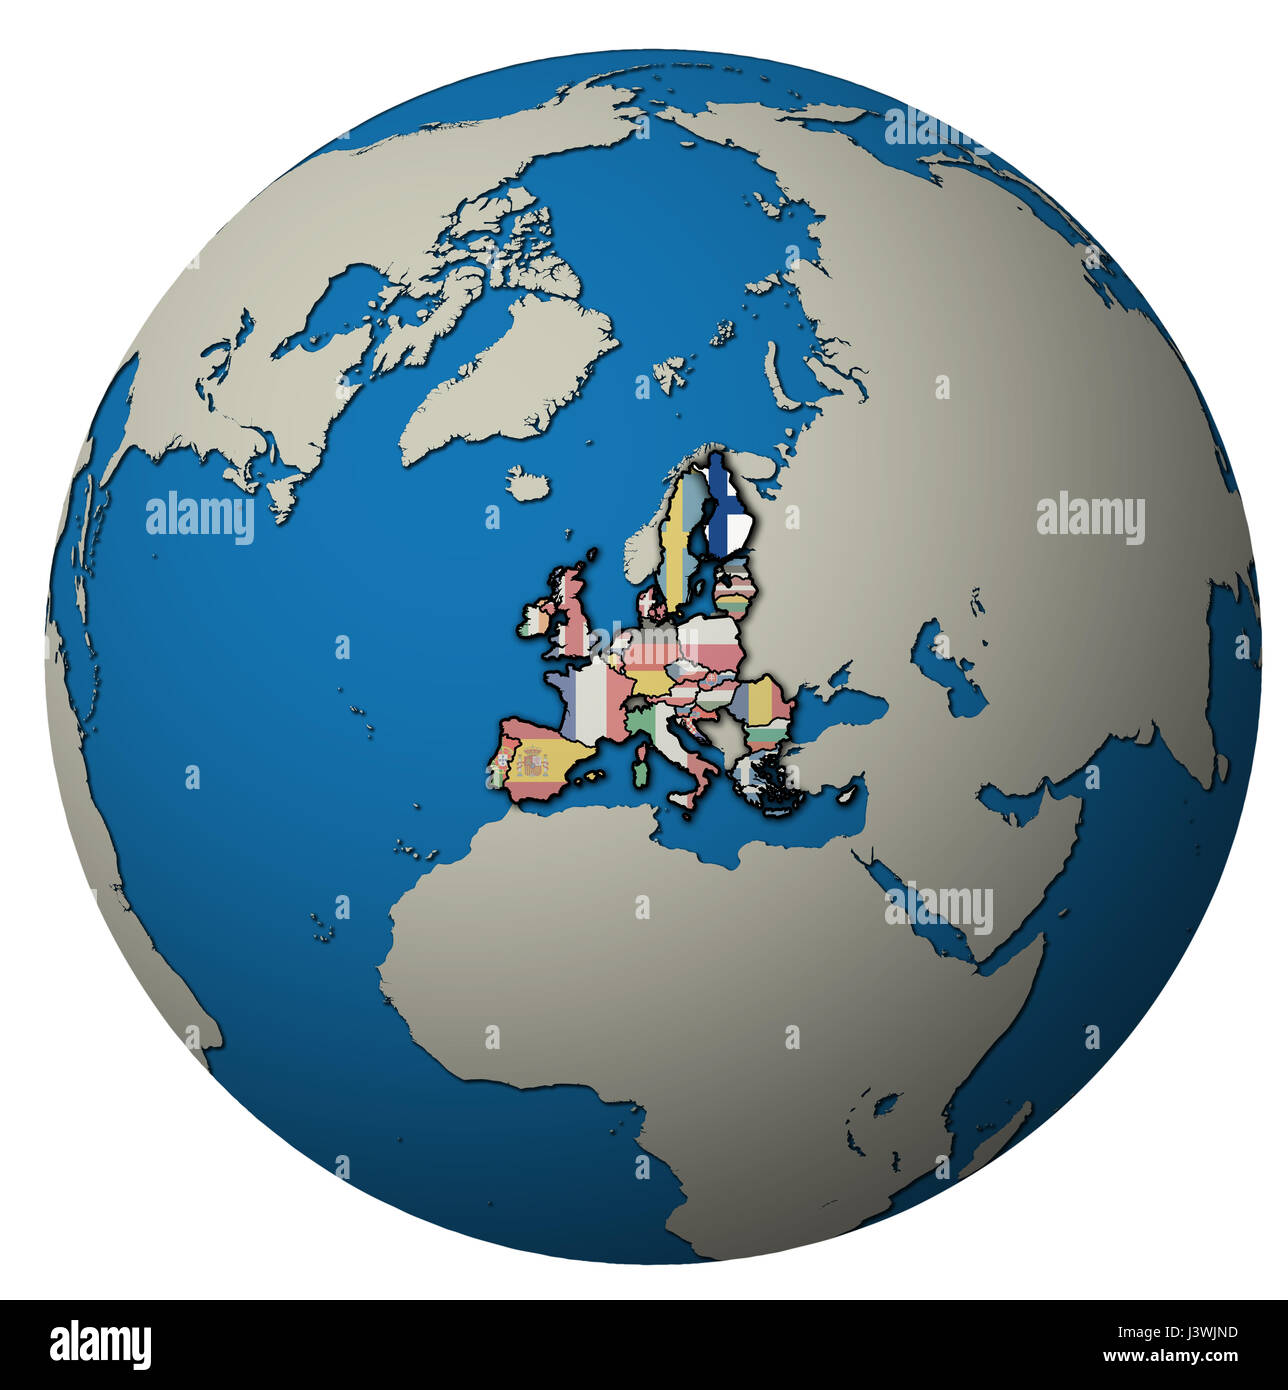 Finnland-Lage mit Nationalflagge über Gebiet der Europäischen Union Mitgliedsländer auf Globuskarte isoliert auf weiß Stockfoto